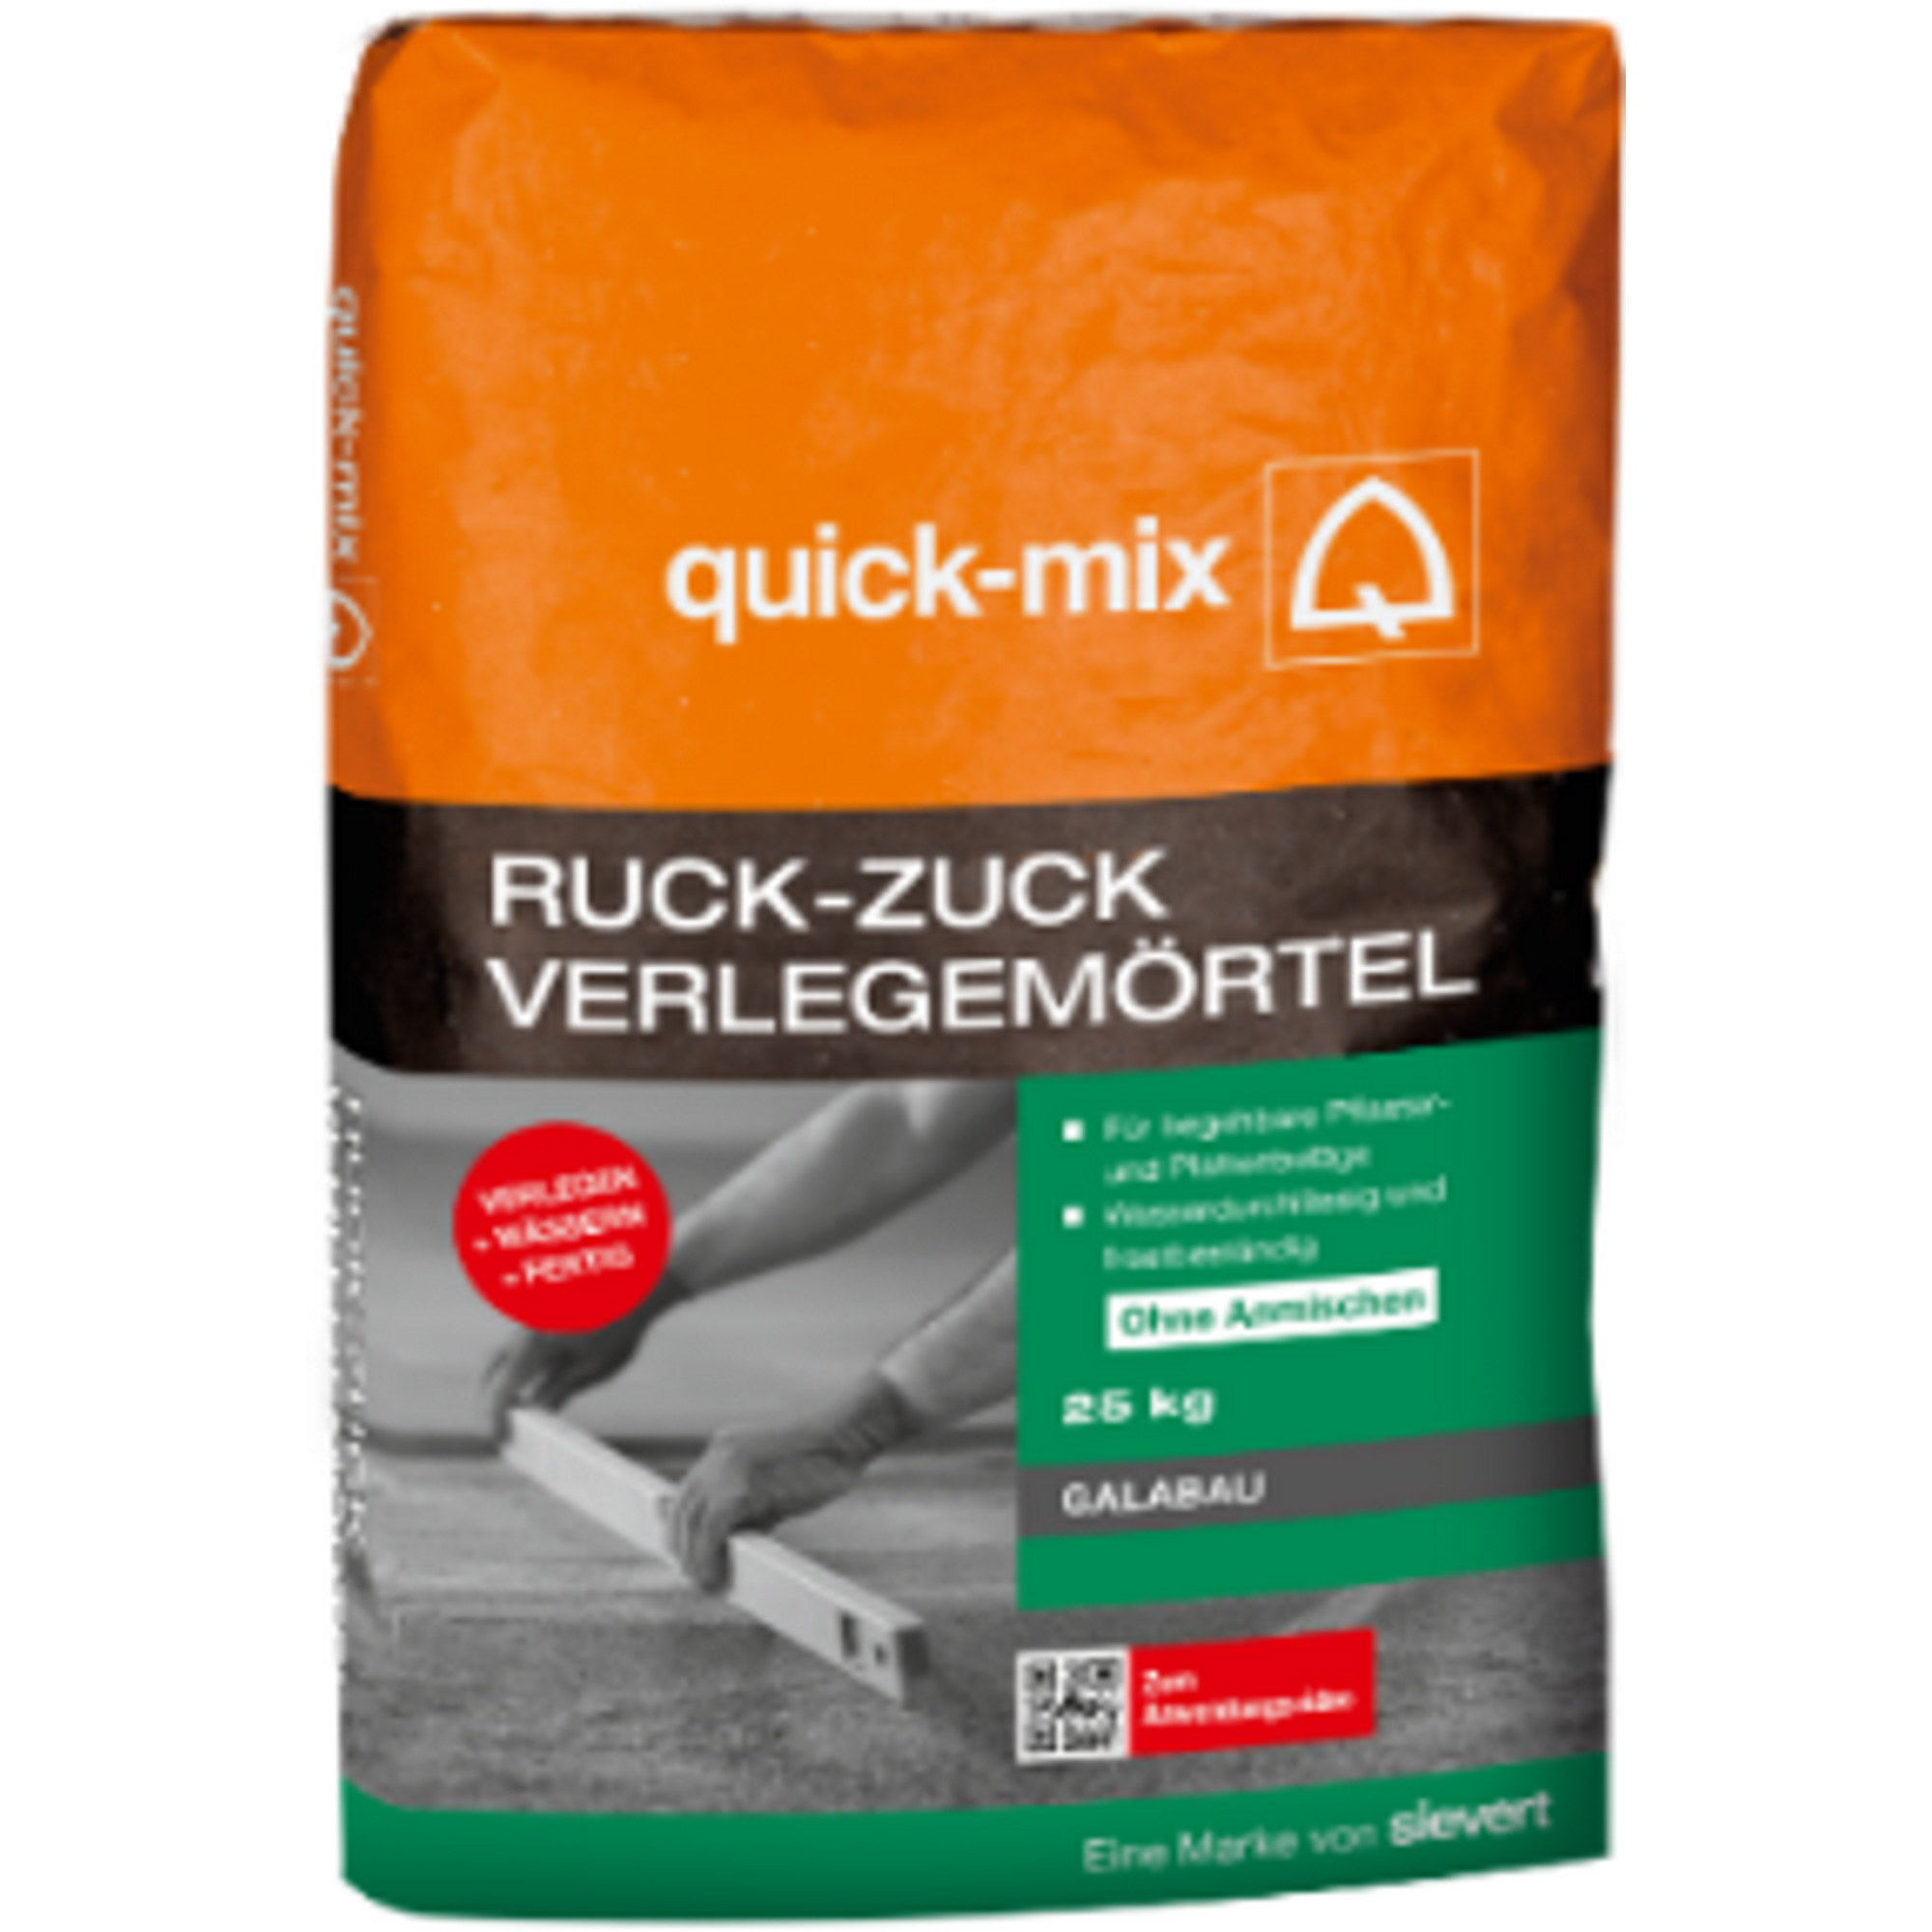 Verlegemörtel 'Ruck-Zuck' 25 kg + product picture